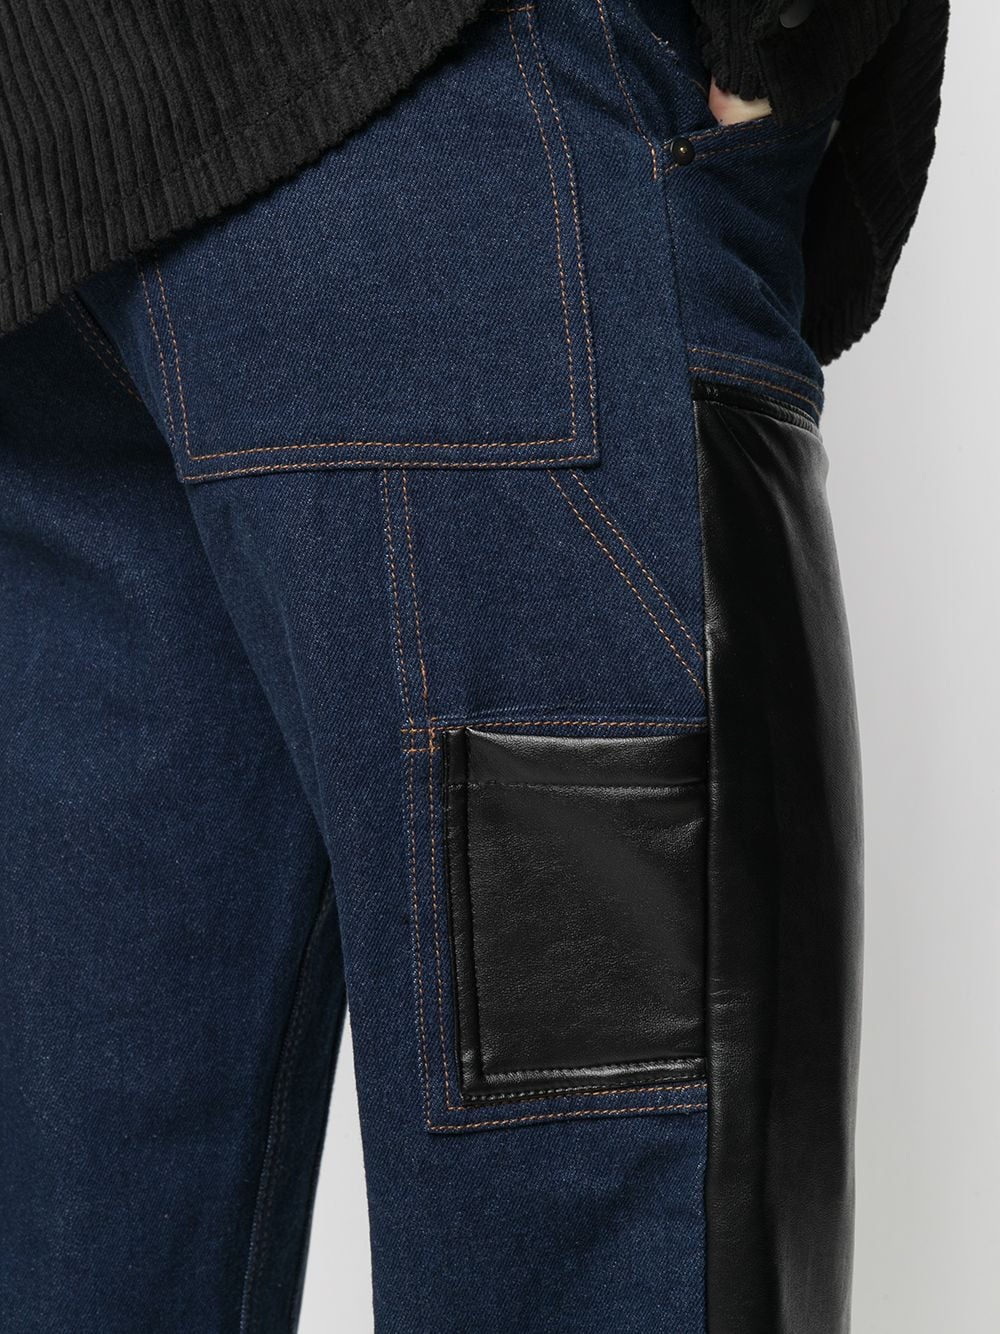 фото Duoltd прямые джинсы с контрастной вставкой